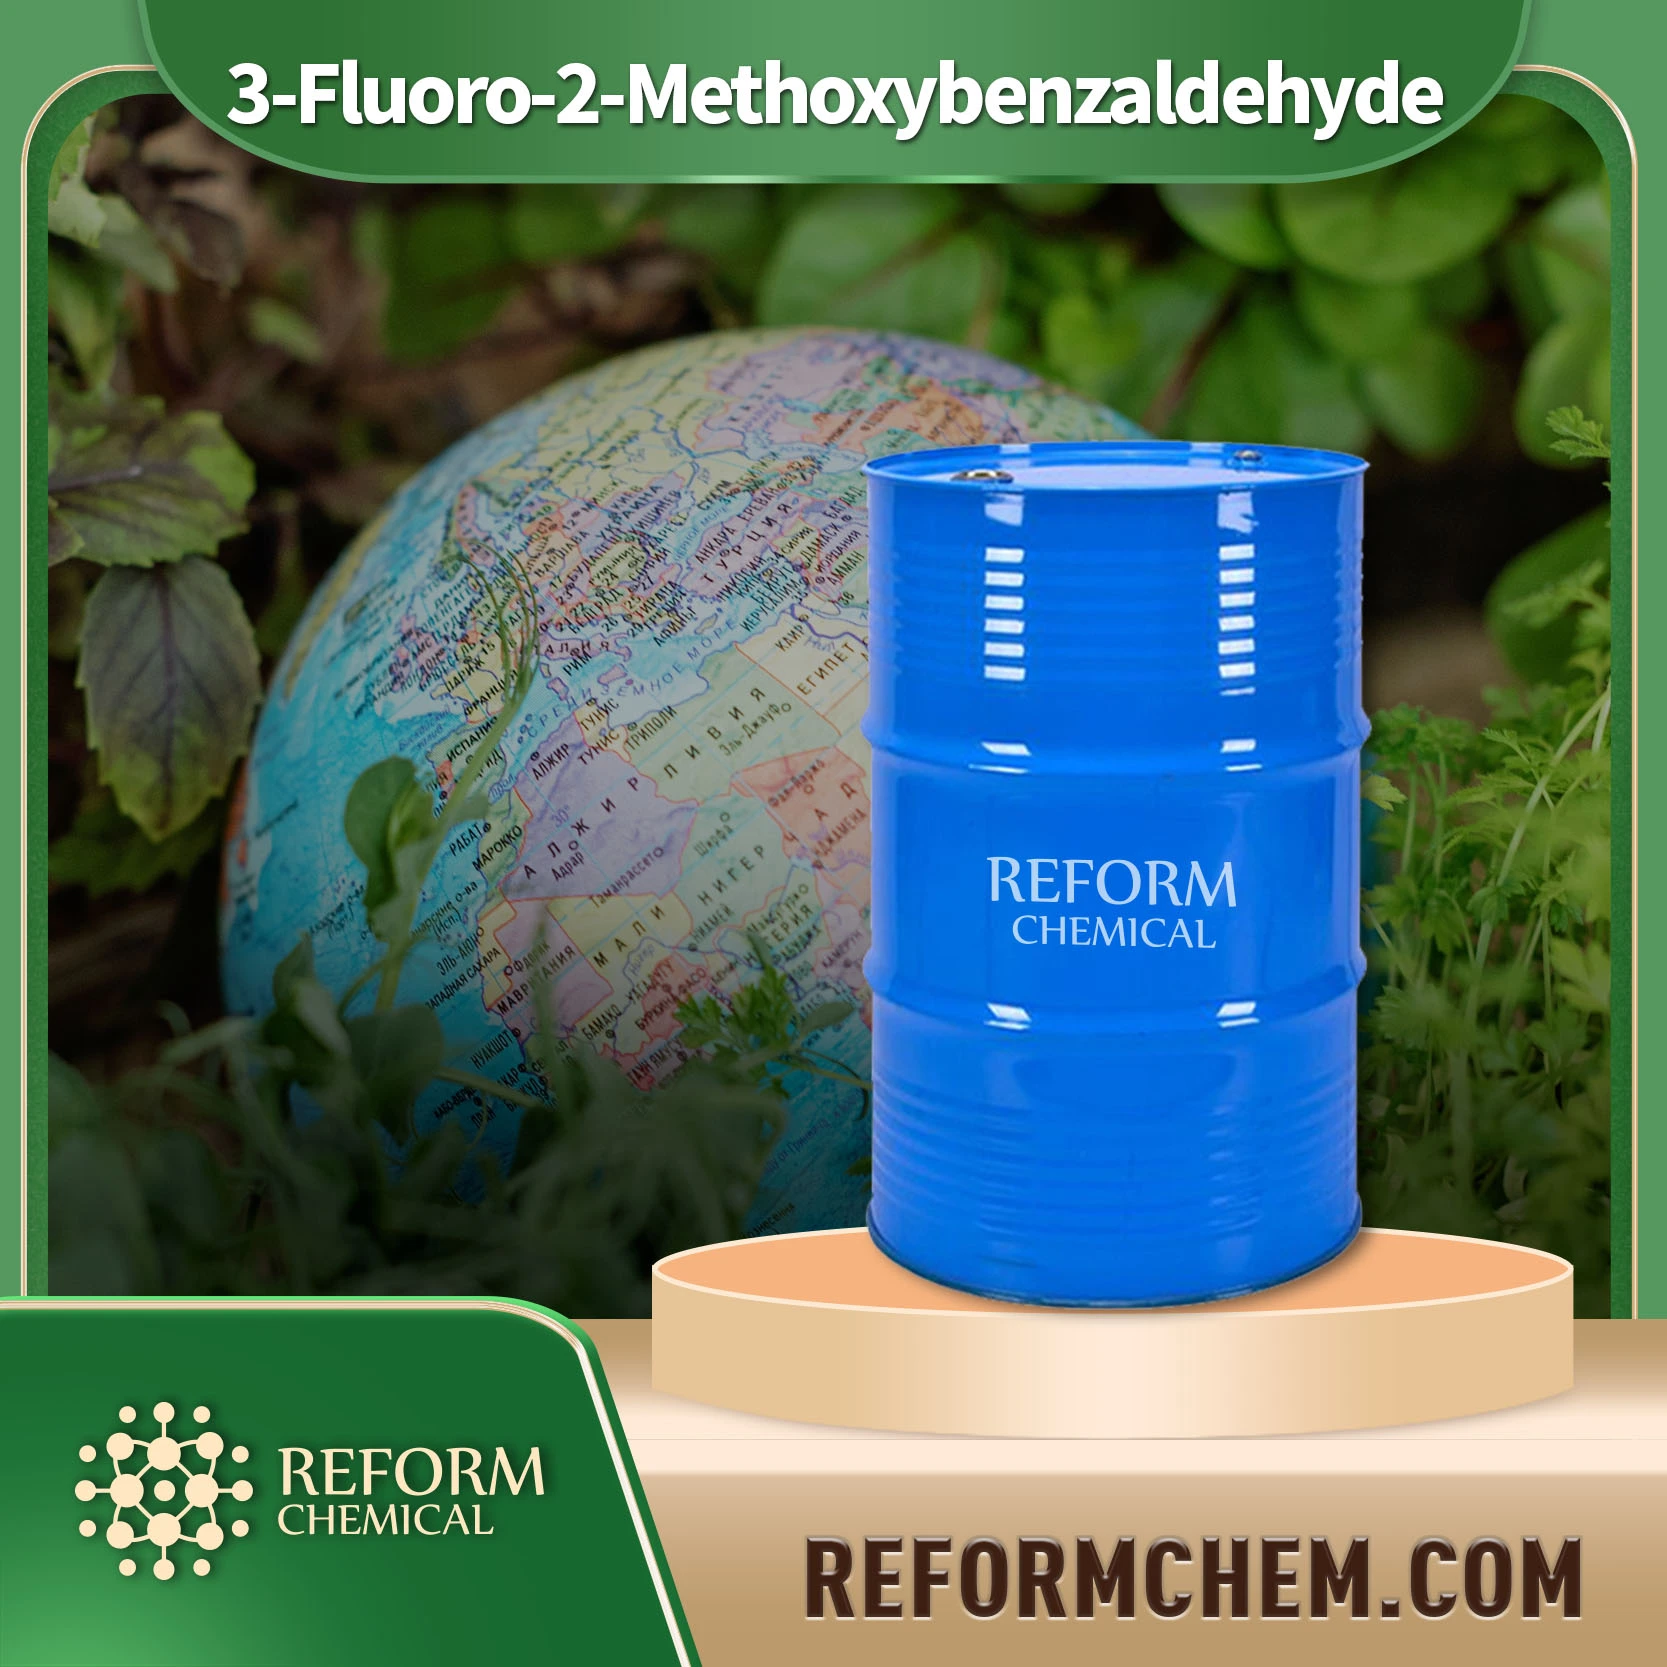 3-Fluoro-2-Methoxybenzaldehyde